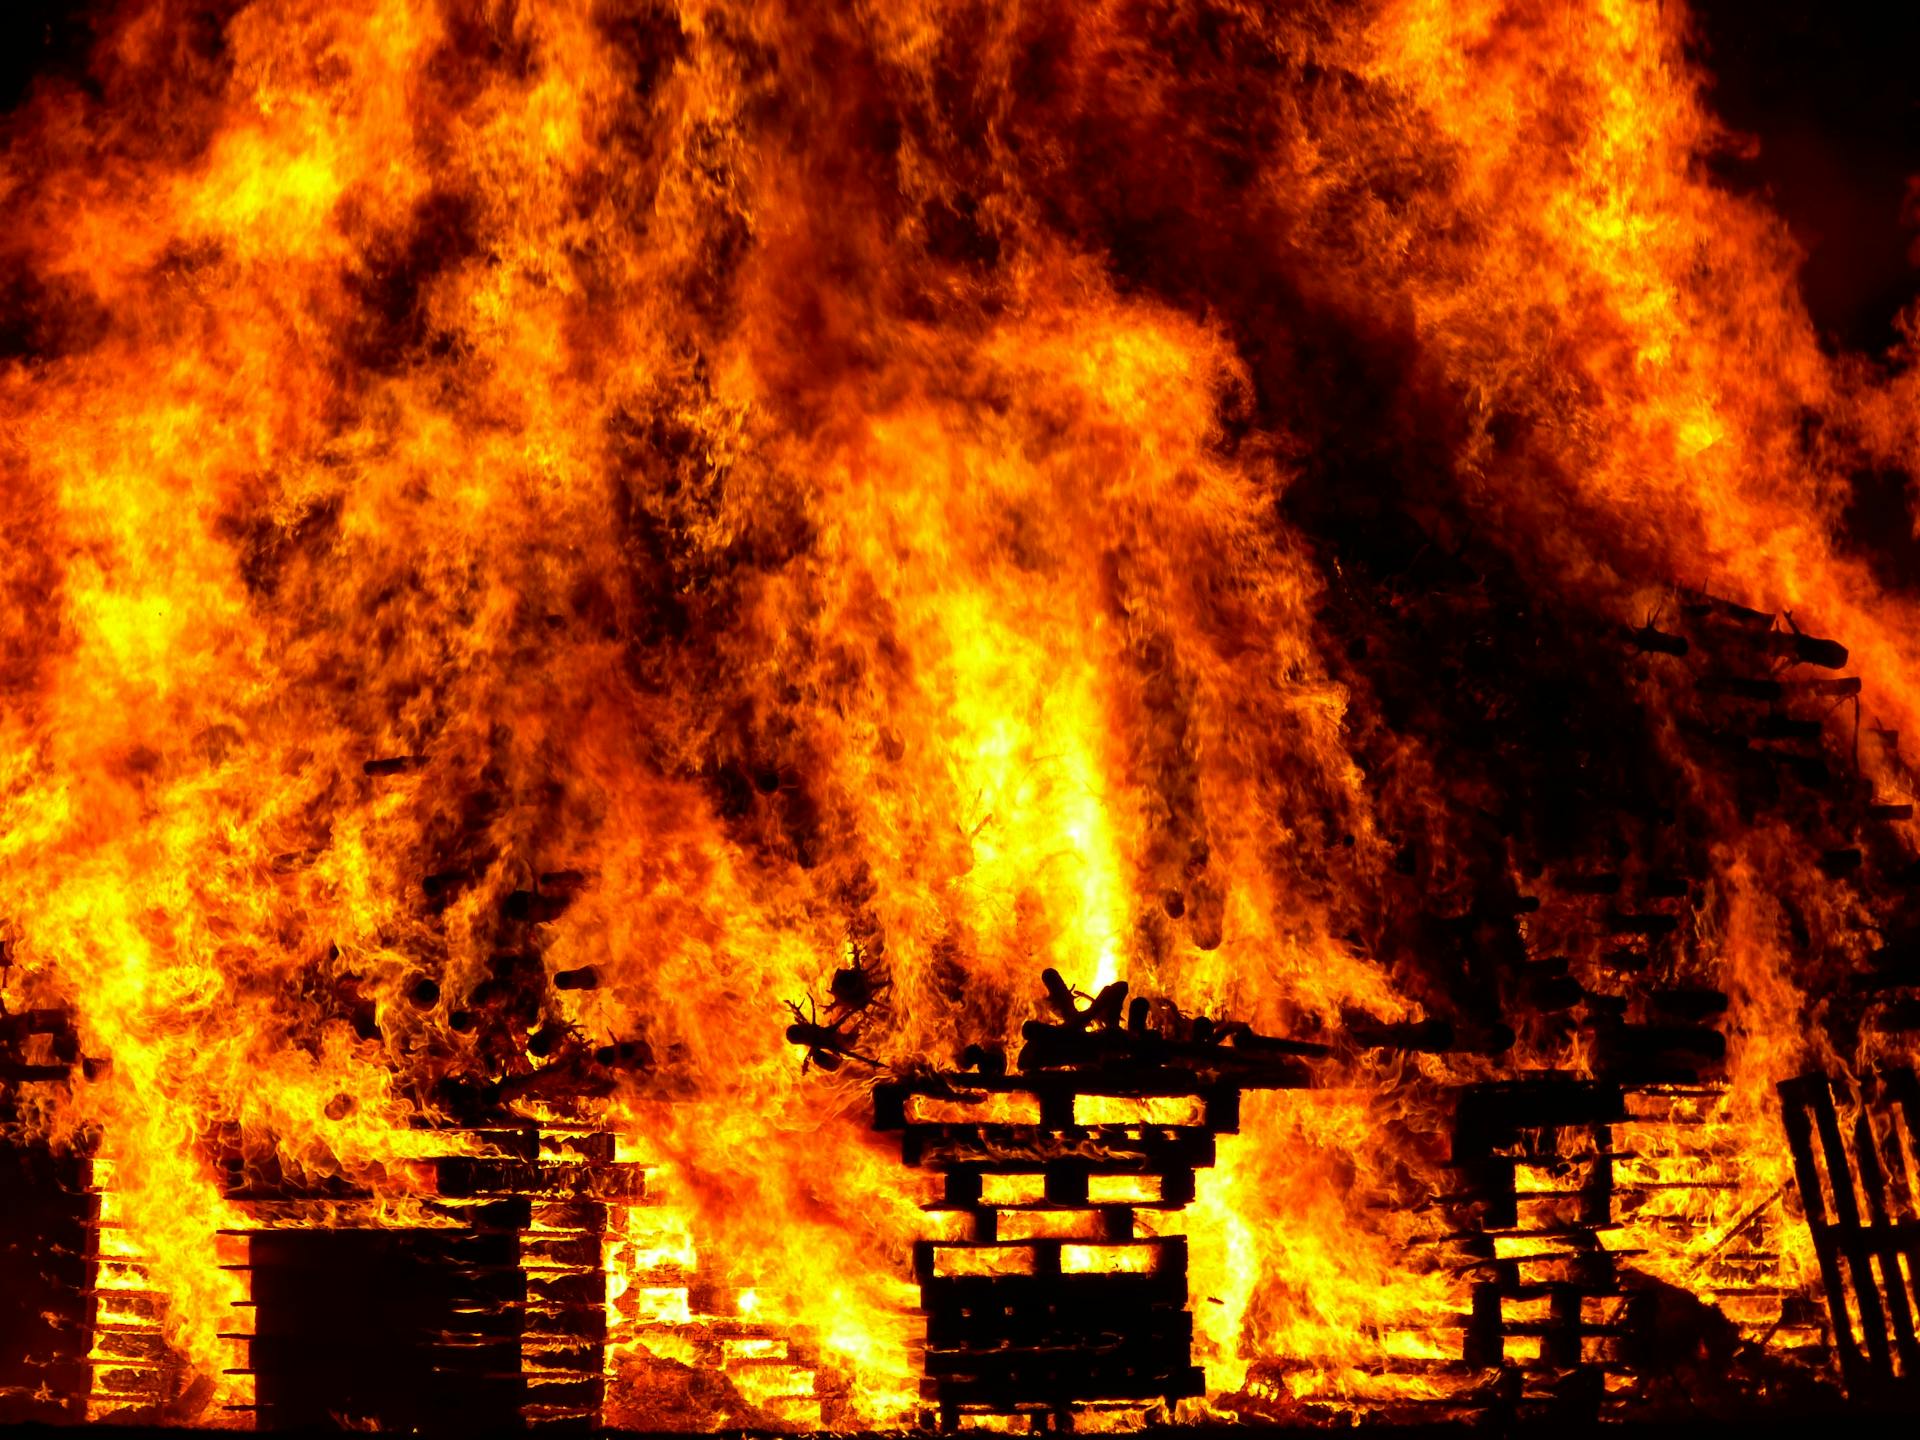 Une flambée d'incendie engloutissant un bâtiment | Source : Pexels